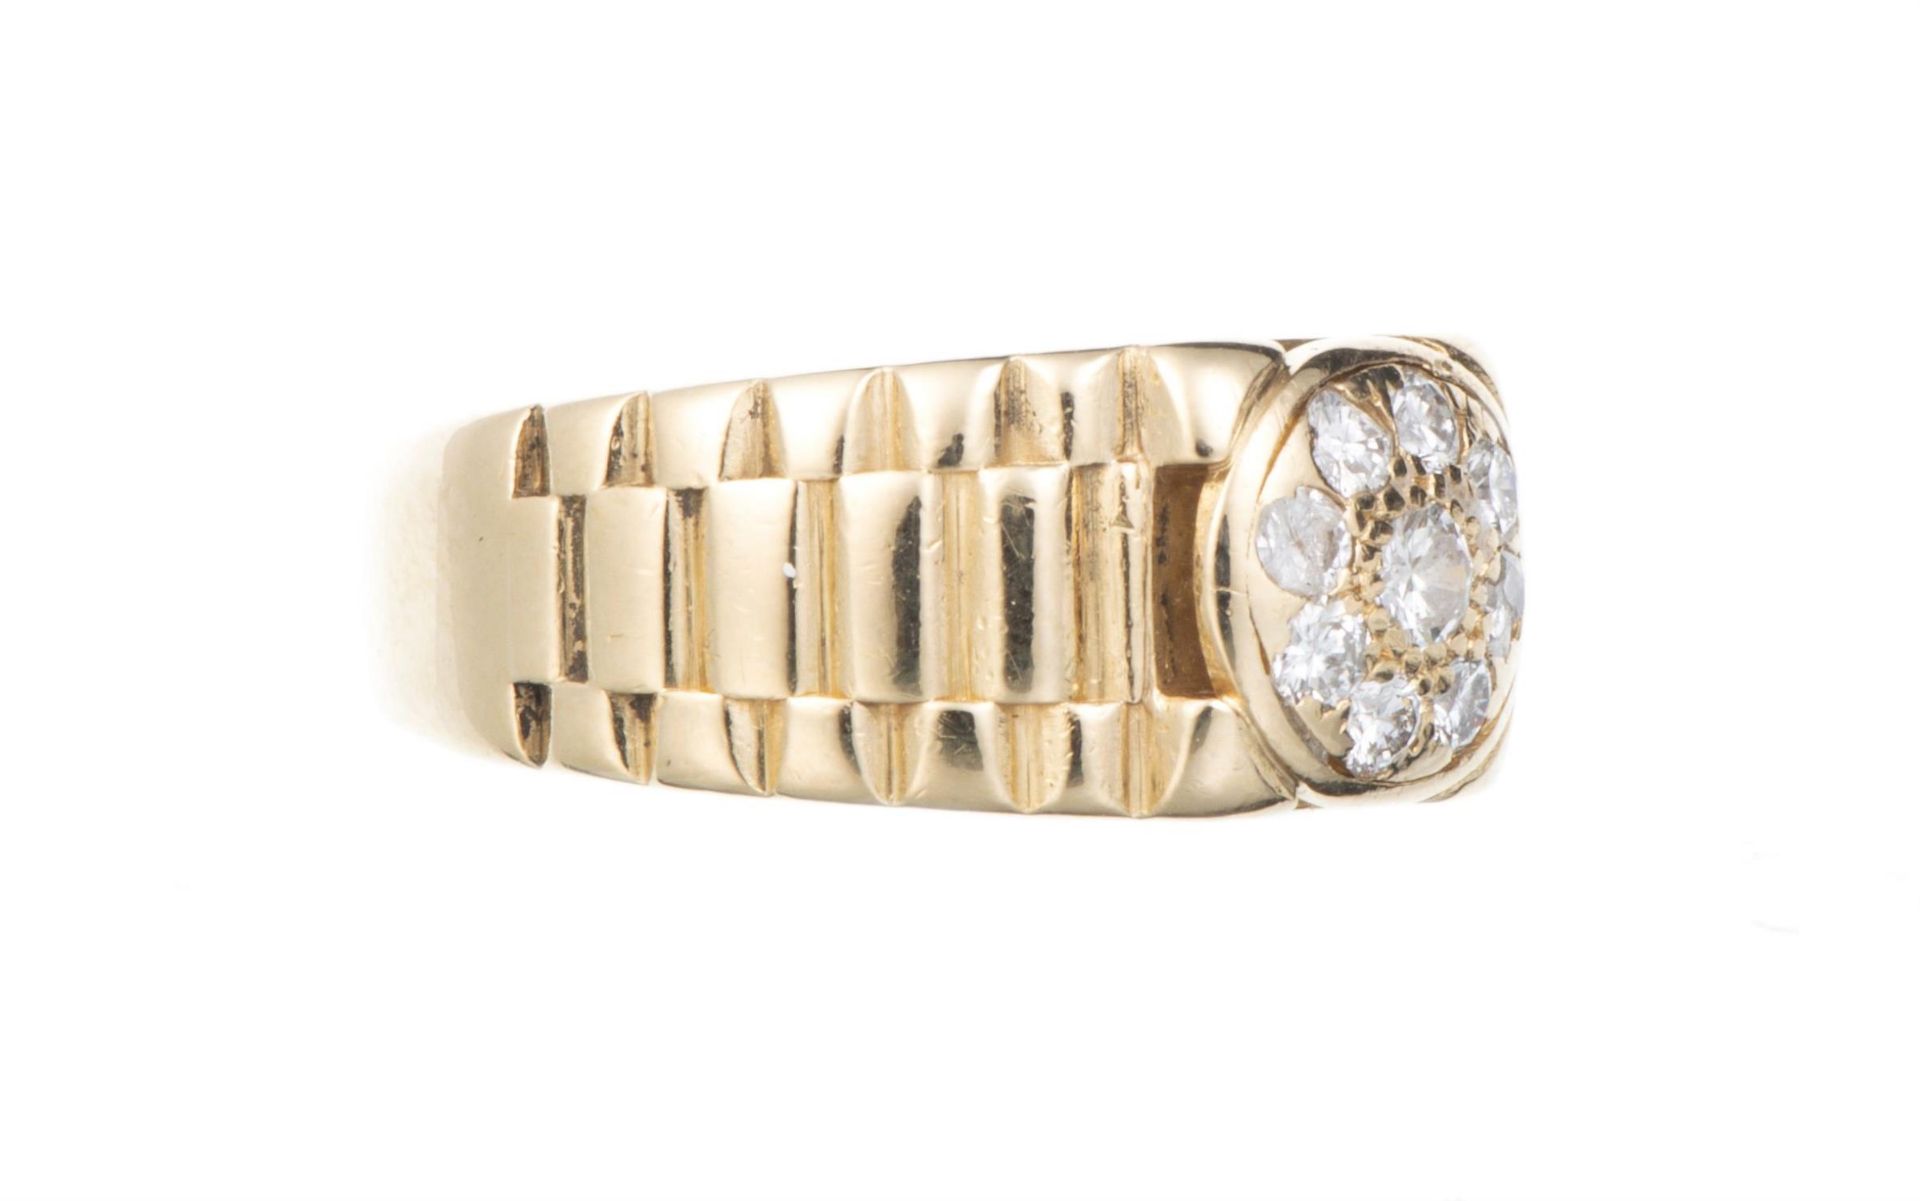 Bague de style Rolex, or jaune et diamants... - Image 4 of 4